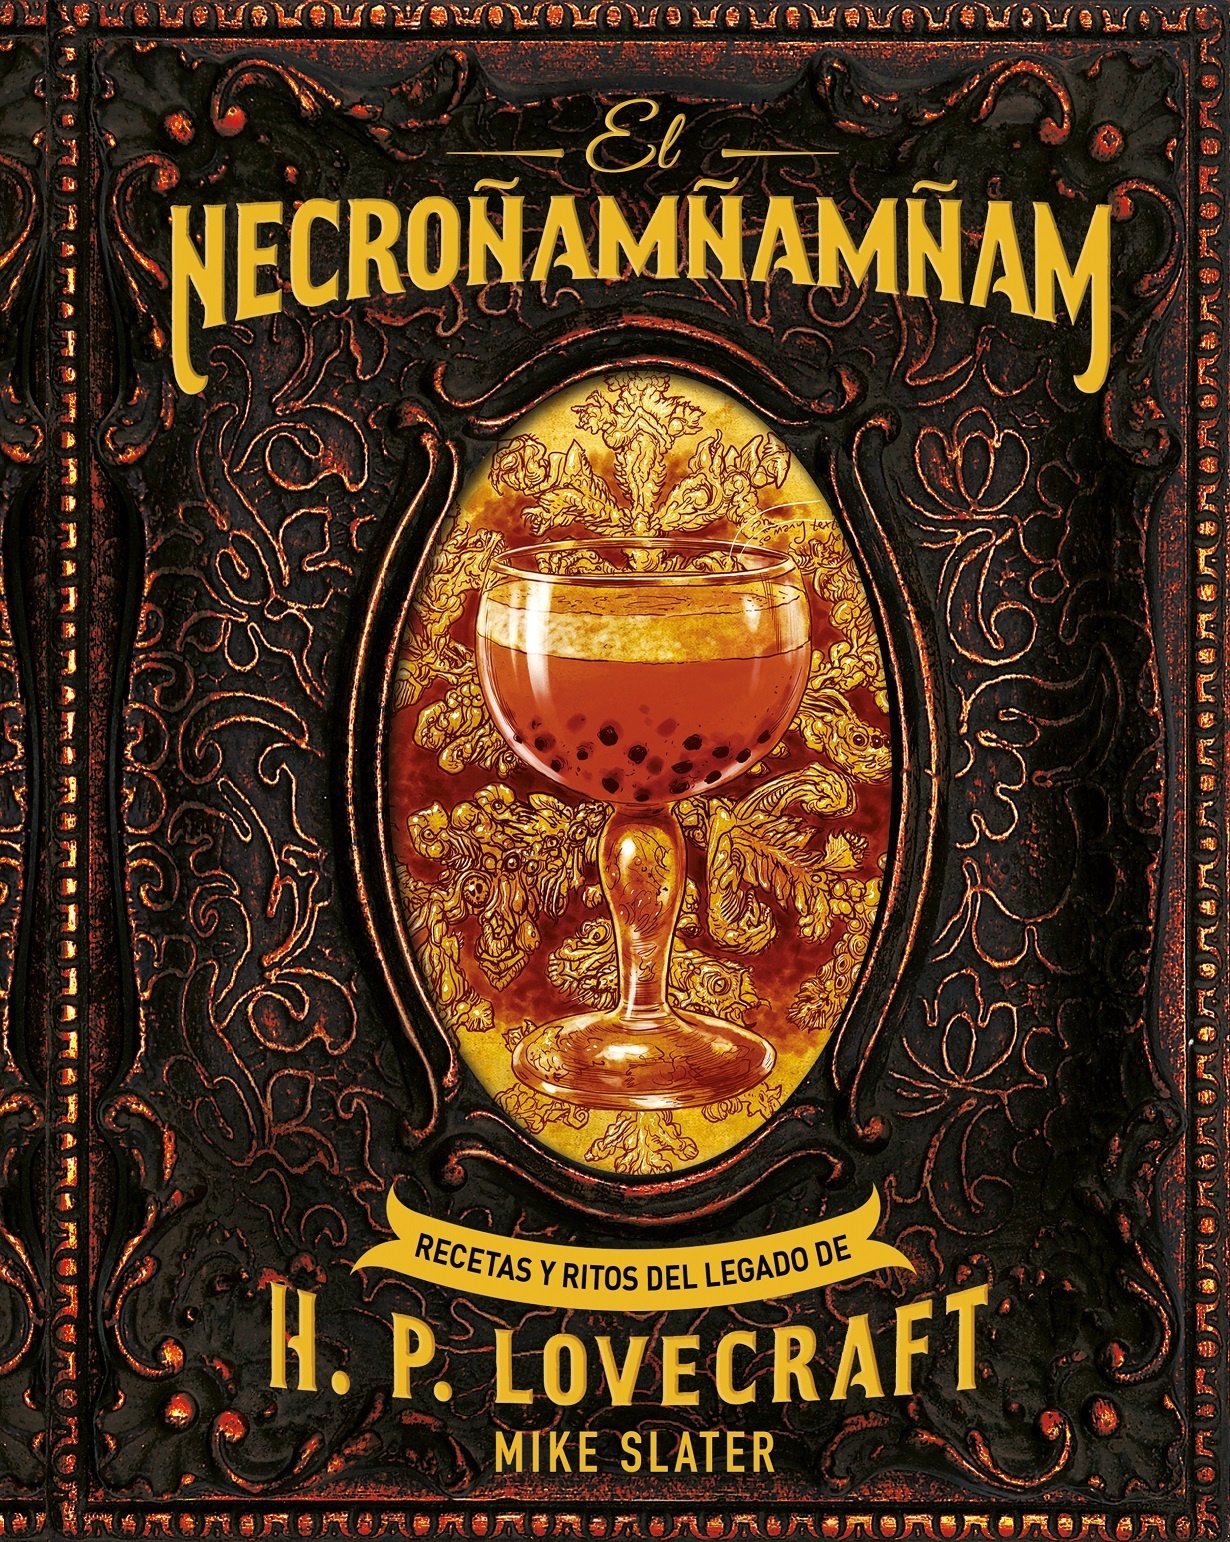 Necroñamñamñam, El "Recetas y ritos del legado de H. P. Lovecraft"